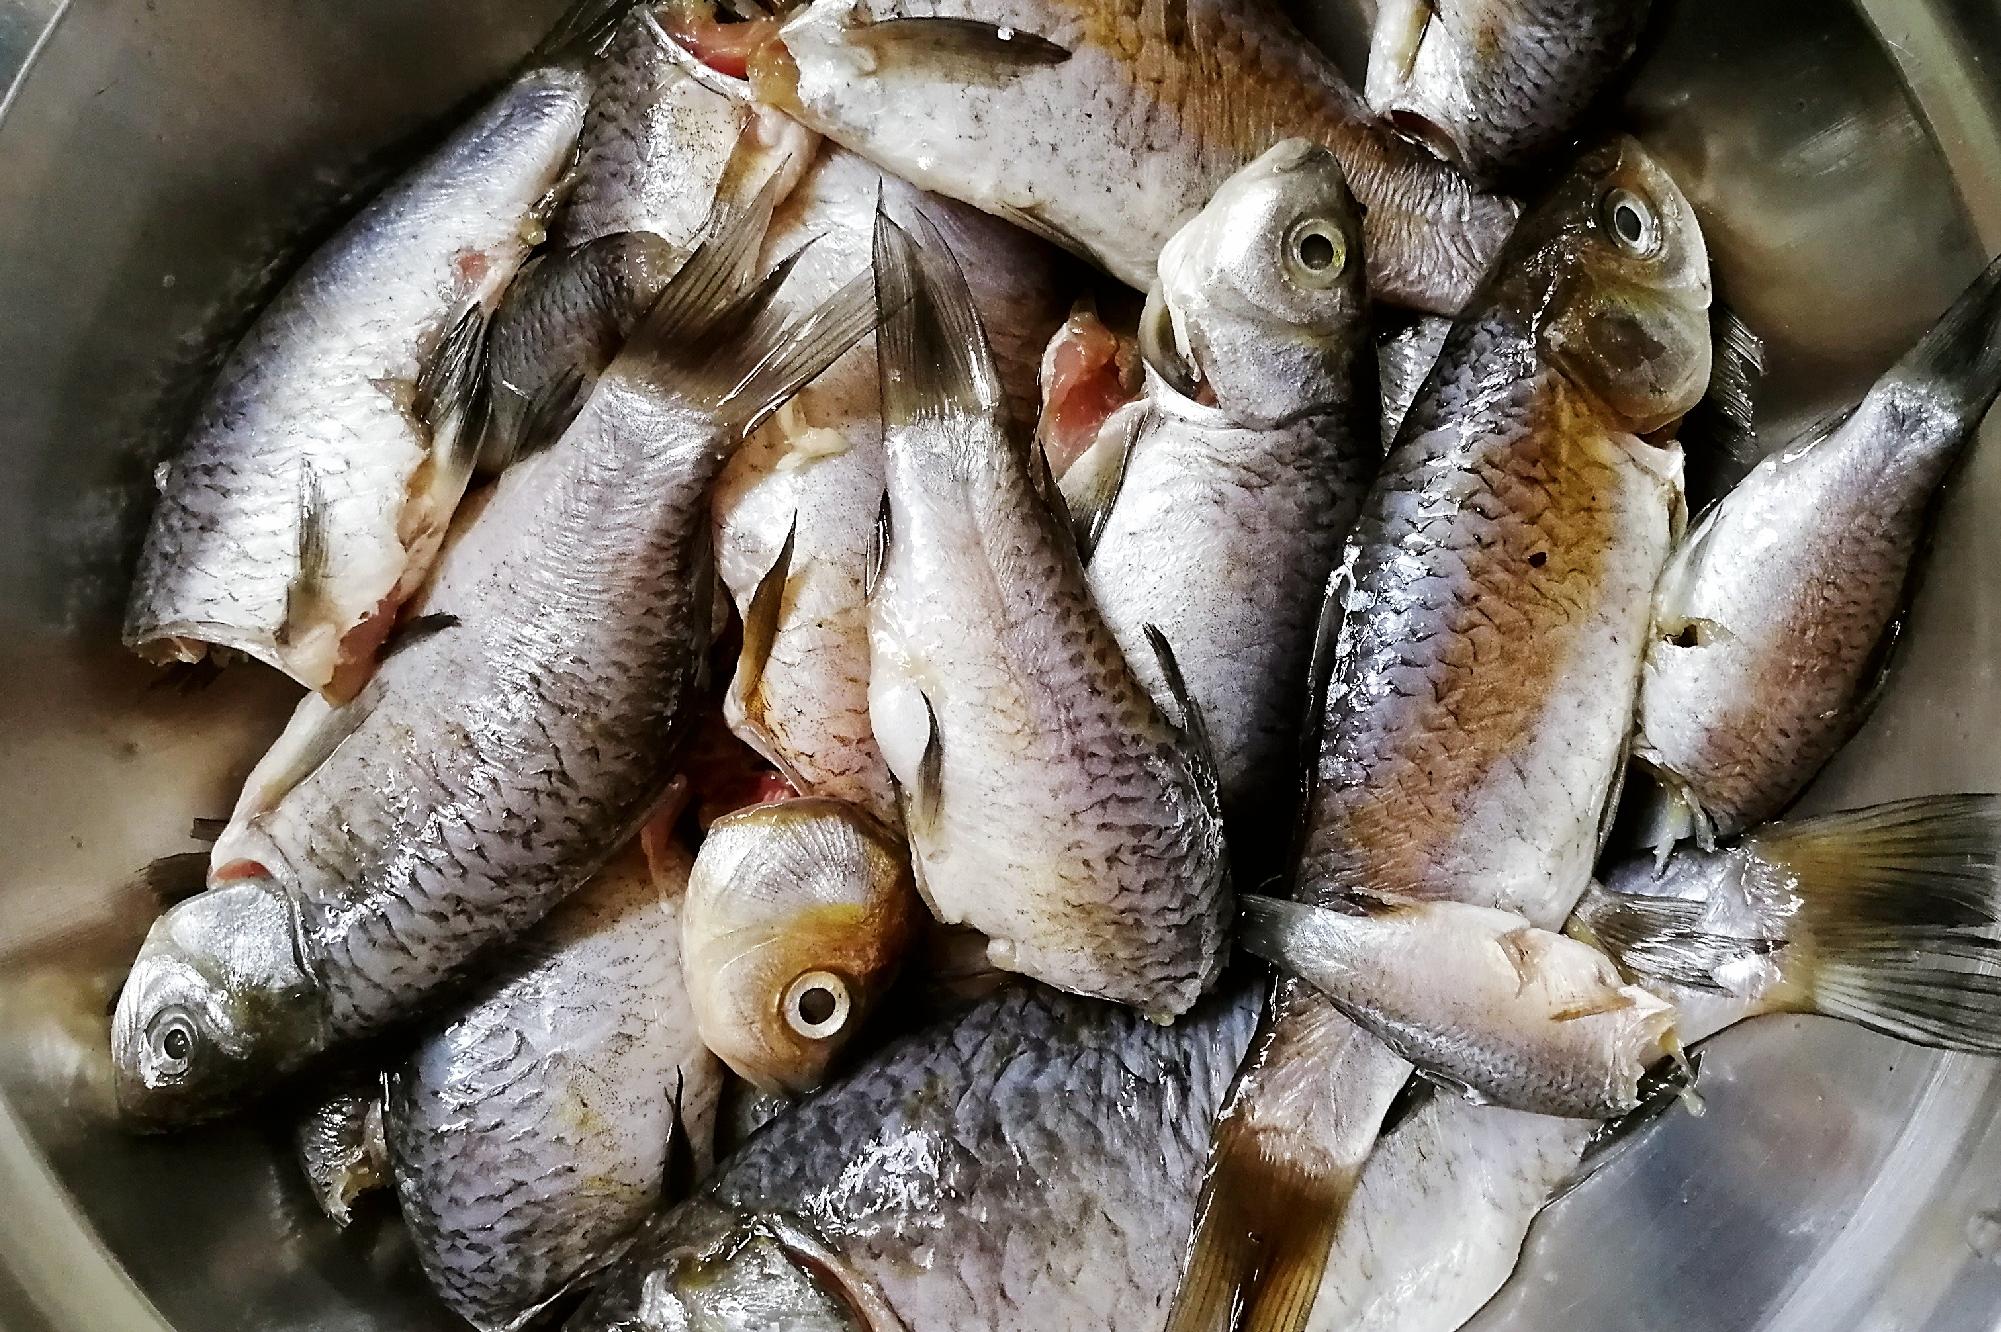 黄河鲤鱼-名特食品图谱-图片